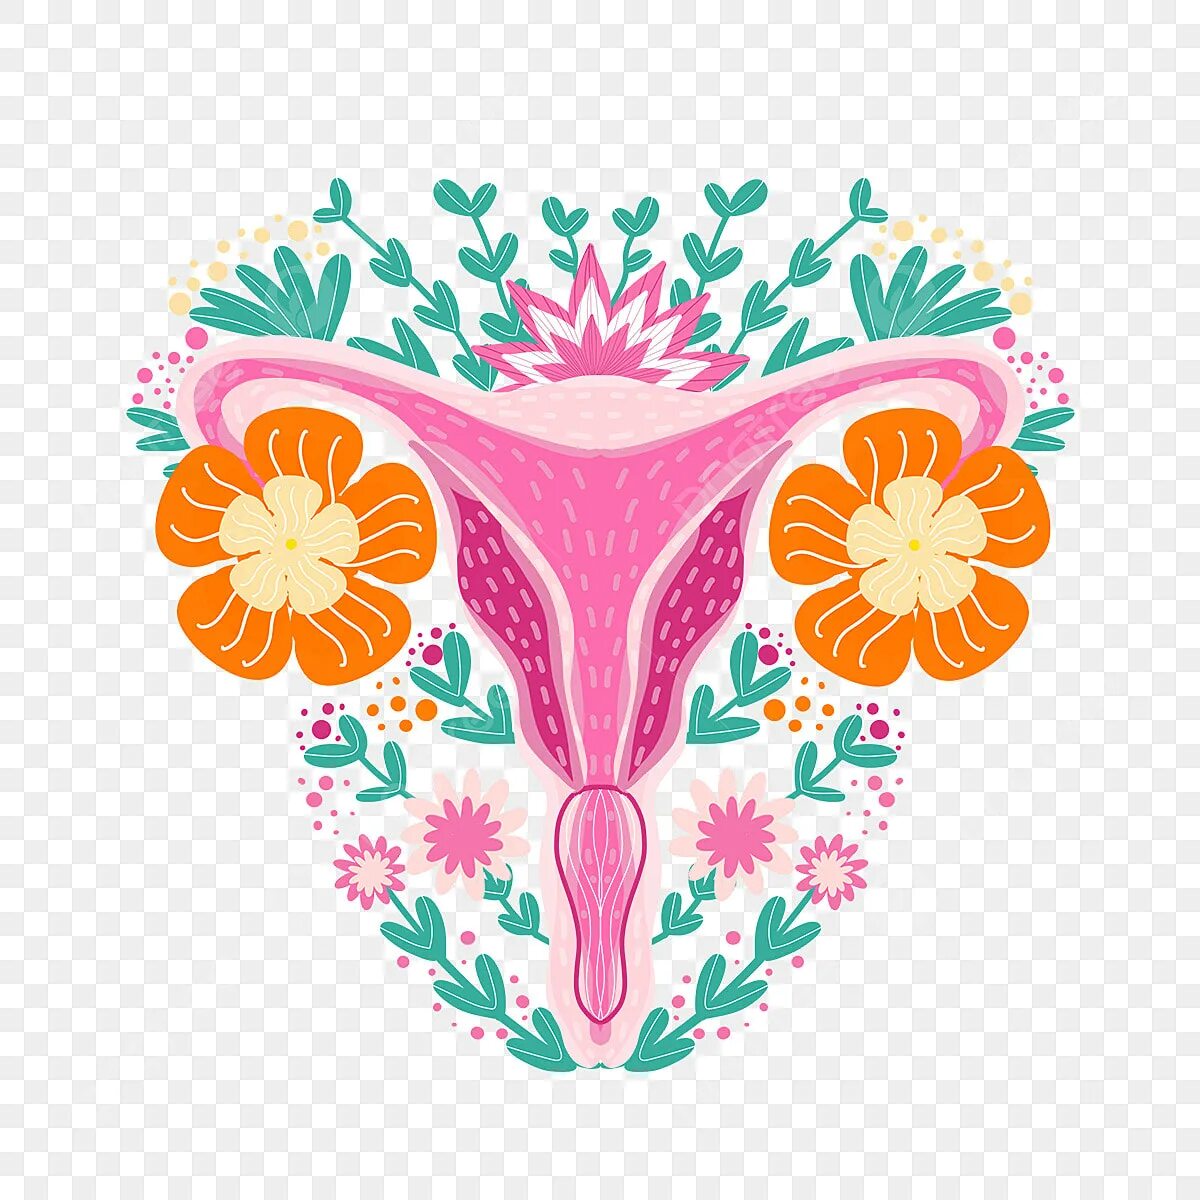 Биология женские органы. Органы женщины цветы арт. Рисунок женских органов. Репродуктивная система женщины рисунок. Изображение органов в виде цветов.